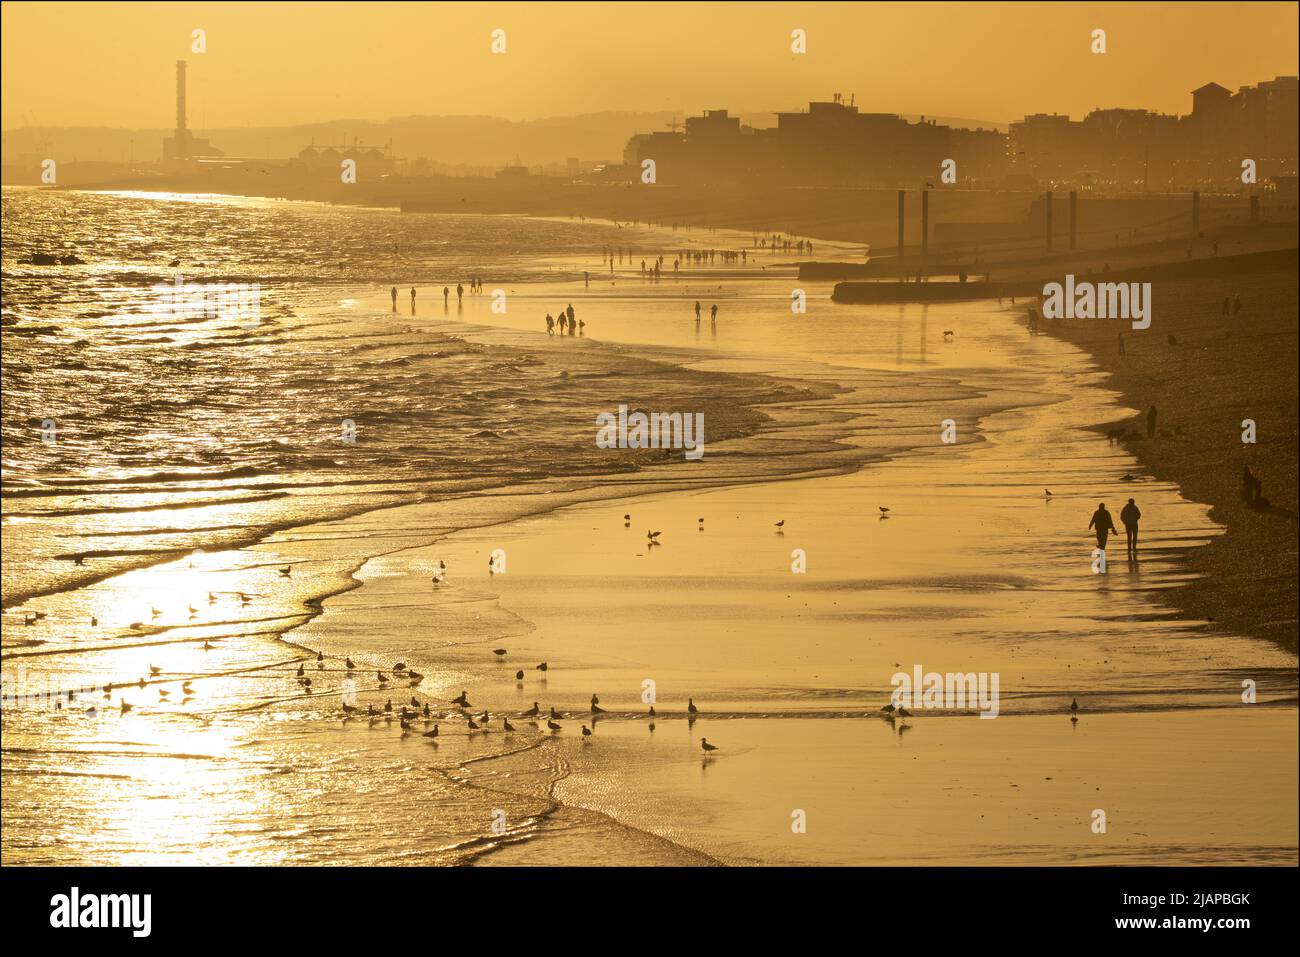 Silhoueted formes de personnes sur la plage à marée basse, Brighton & Hove, East Sussex, Angleterre, Royaume-Uni. Les piliers verticaux au-delà à droite représentent les vestiges de l'ancien West Pier. Shoreham Power Station au loin. Banque D'Images